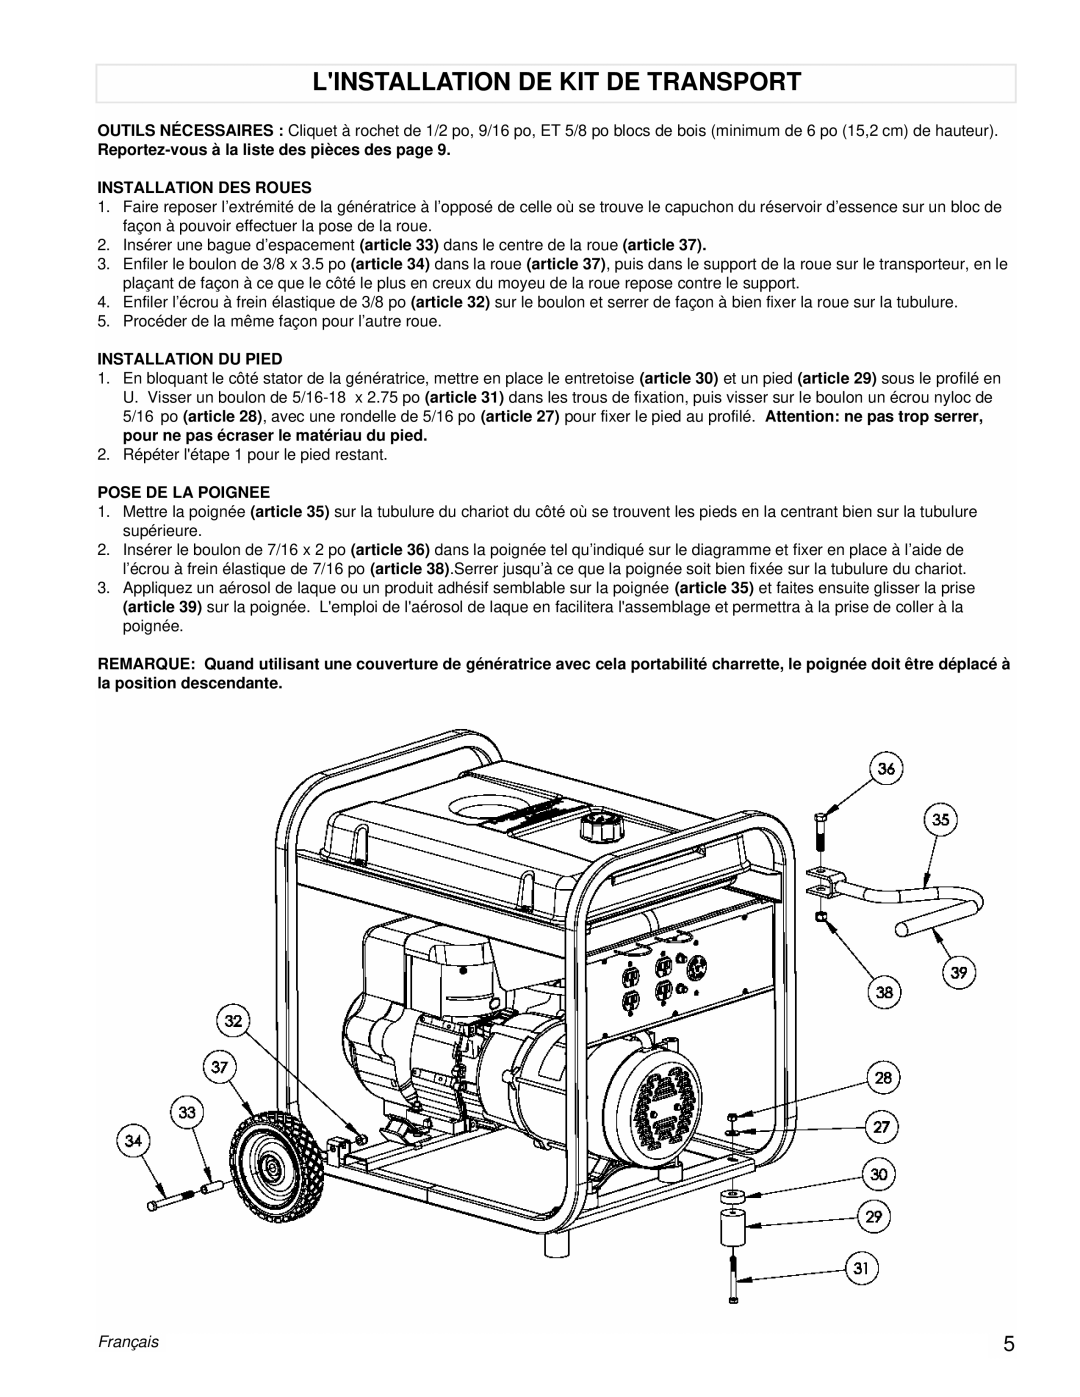 Powermate PM0525312.02 Linstallation De Kit De Transport, Reportez-vousà la liste des pièces des page, Pose De La Poignee 